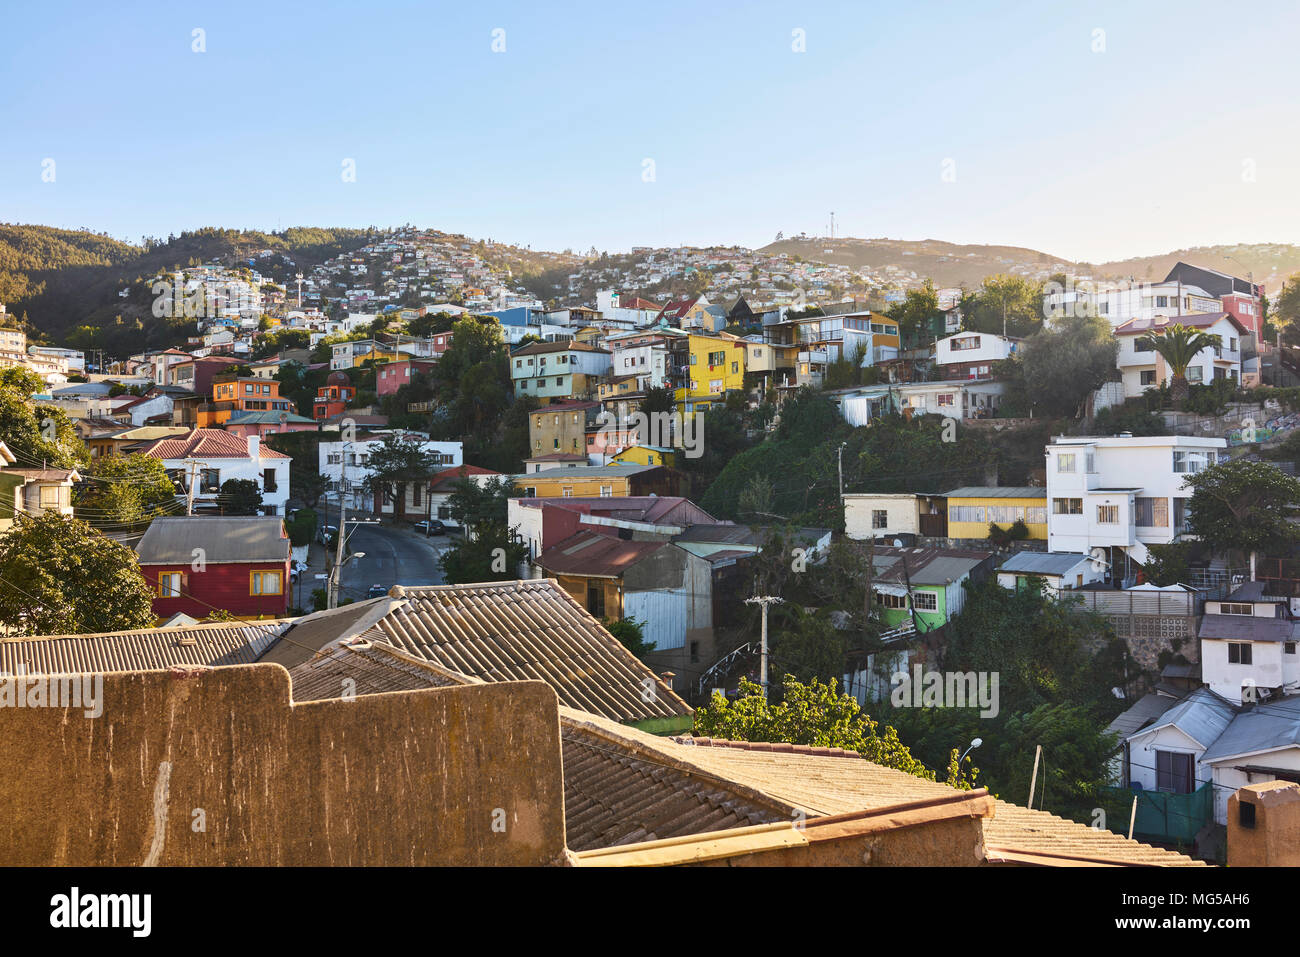 Cerro Concepcion Nachbarschaft in Valparaiso, Chile. Vielzahl von bunten Häusern auf dem Concepcion Hügel sitzen. Weite Einstellung. Stockfoto